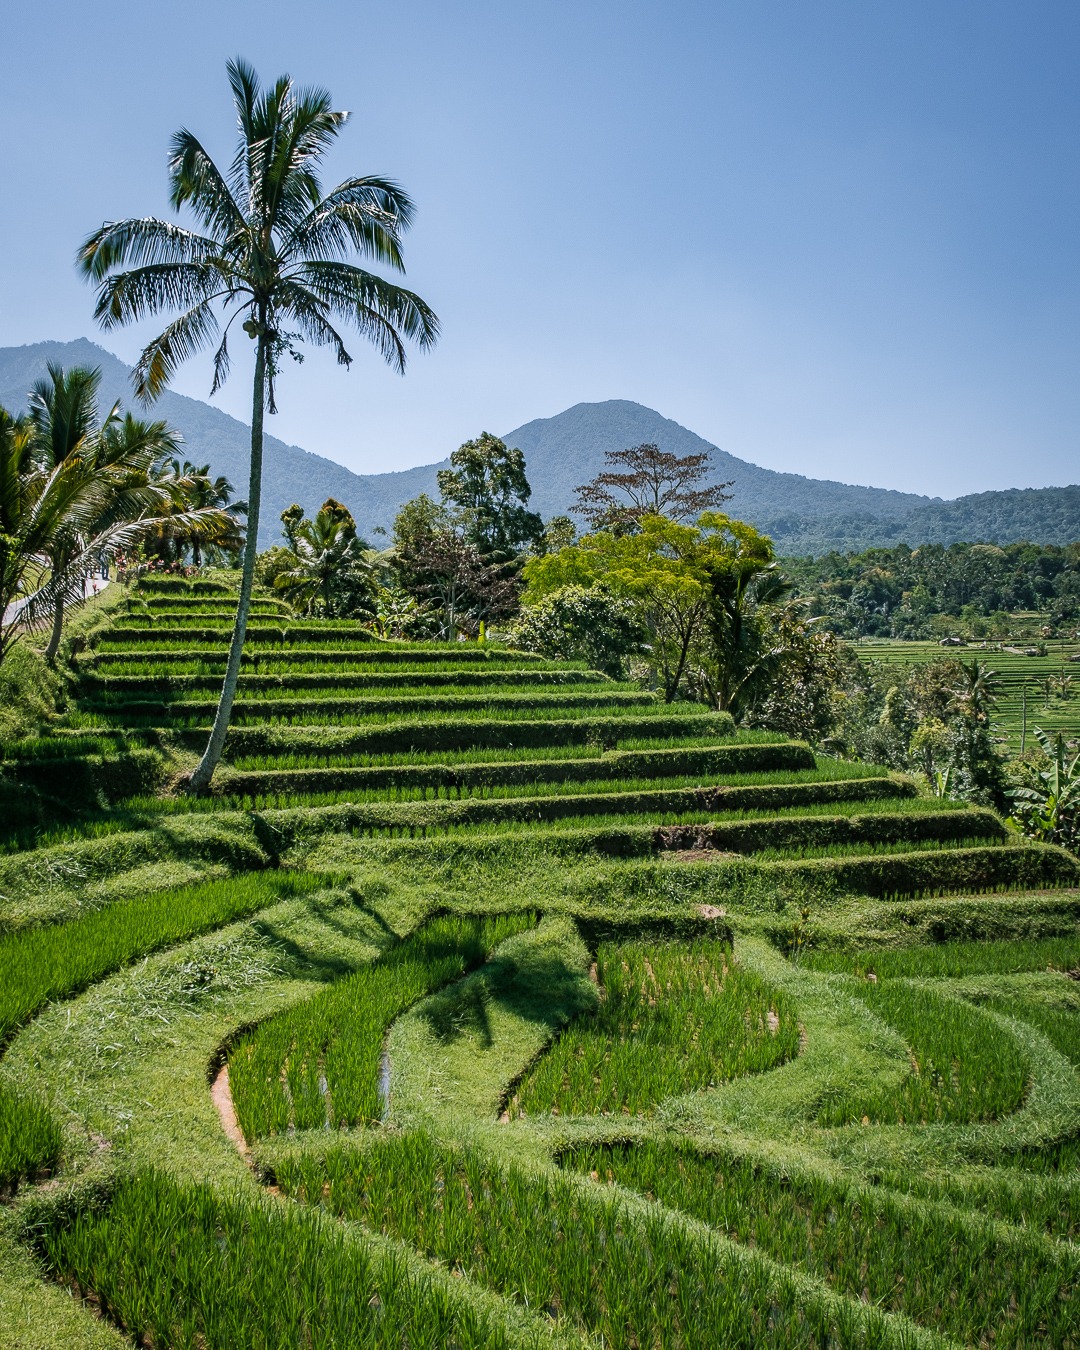 Les rizières de Jatiluwih à Bali sont inscrites au patrimoine mondial de l'Unesco